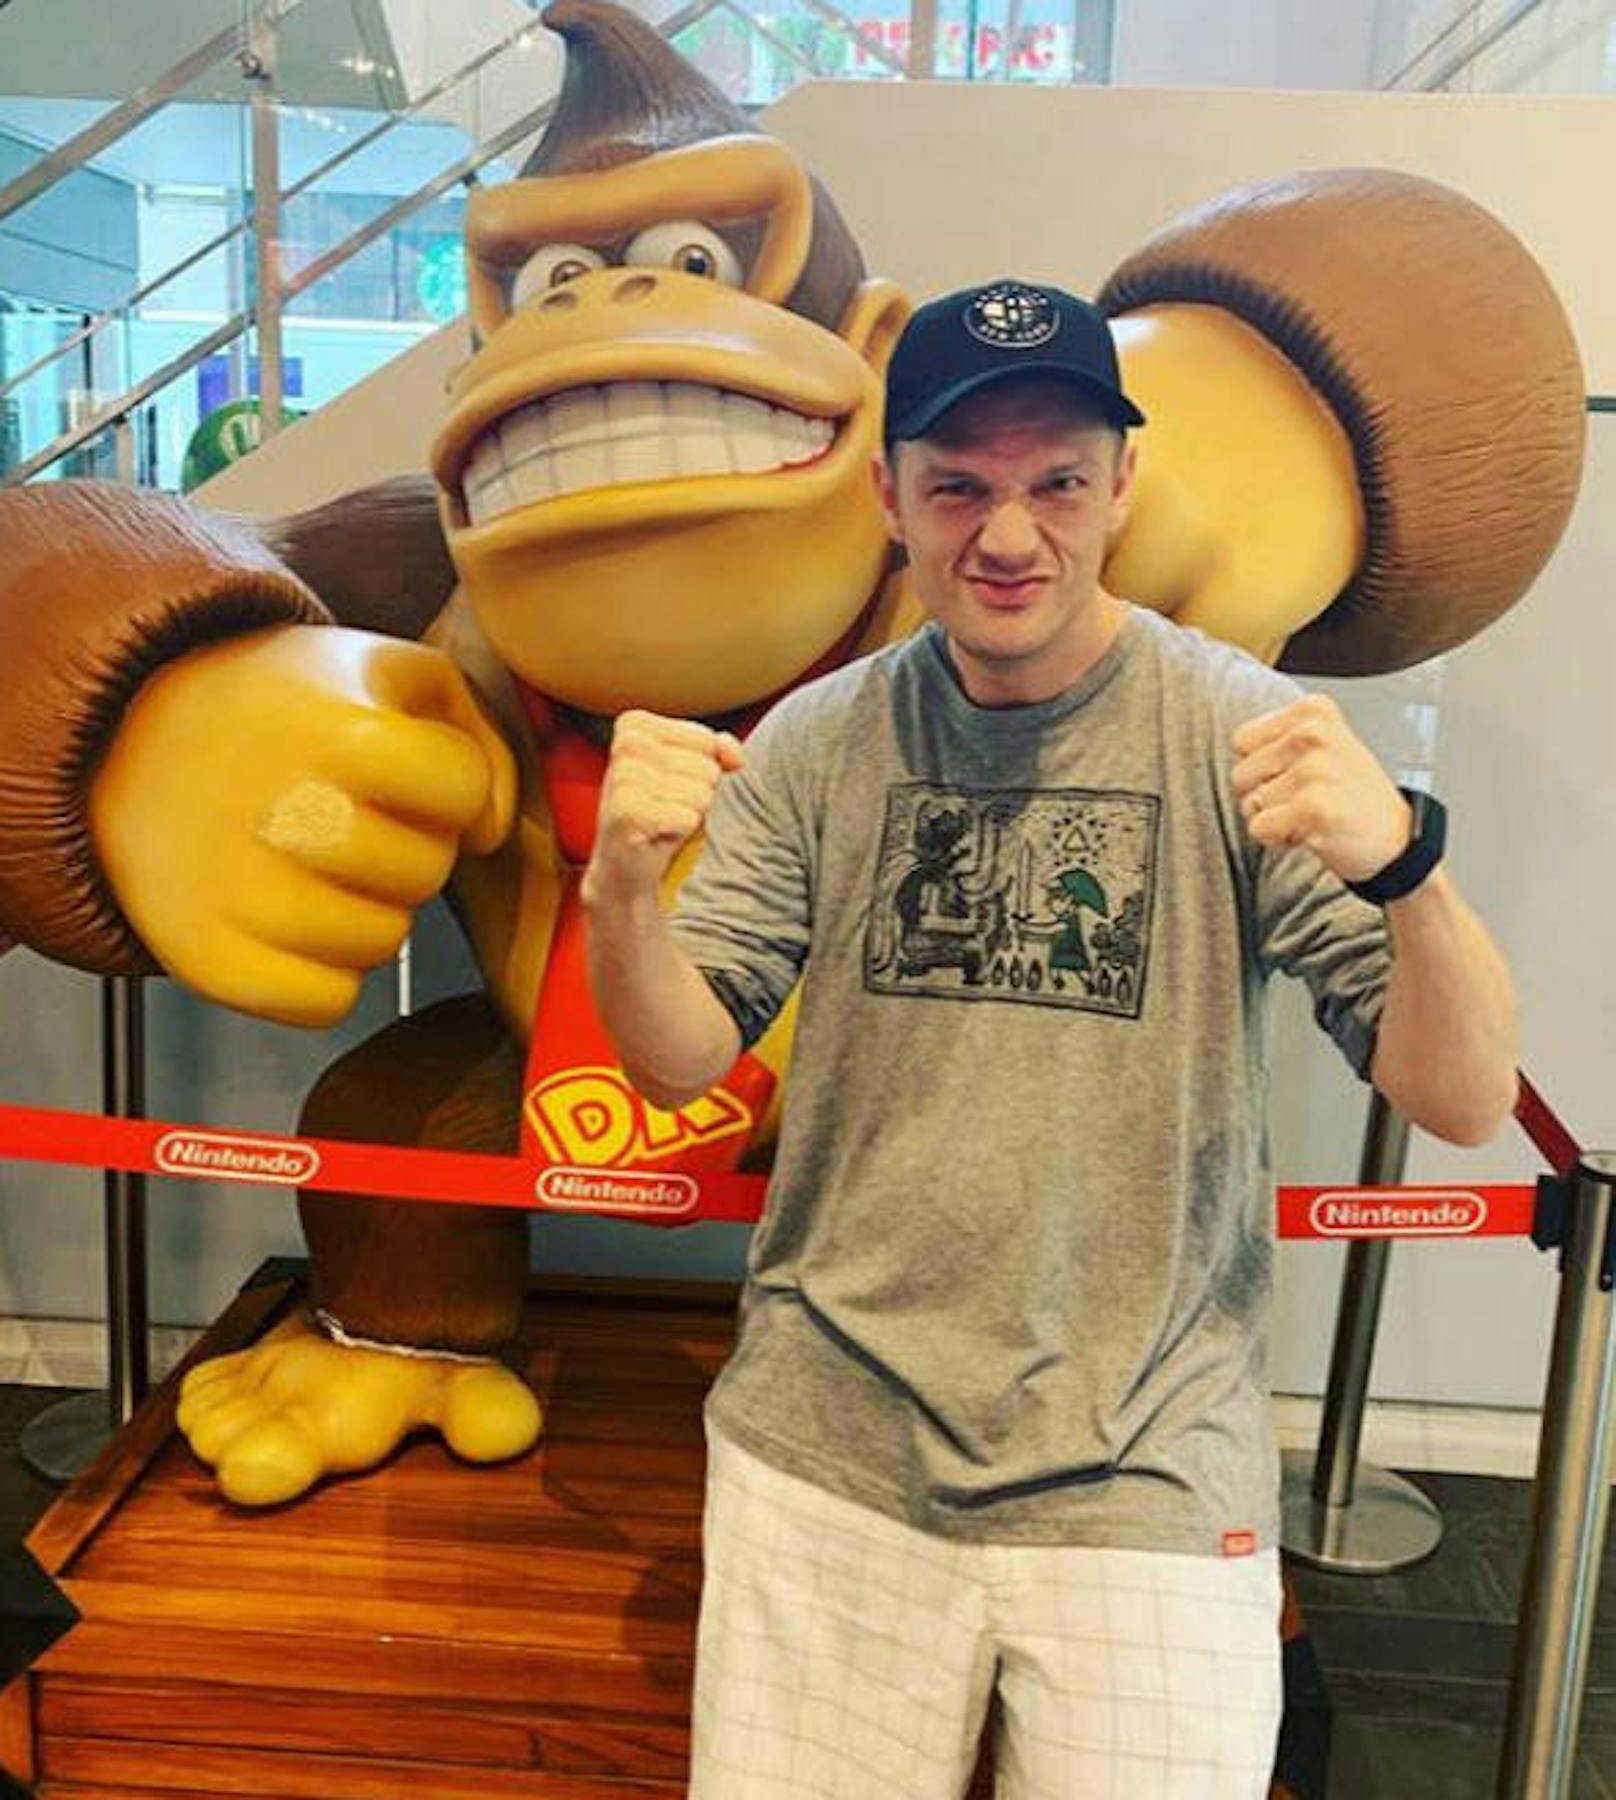 18.08.2019: Da wird selbst Nick Carter wieder zum kleinen Buben. Der Backstreet Boy posiert in New York vor Donkey Kong. 